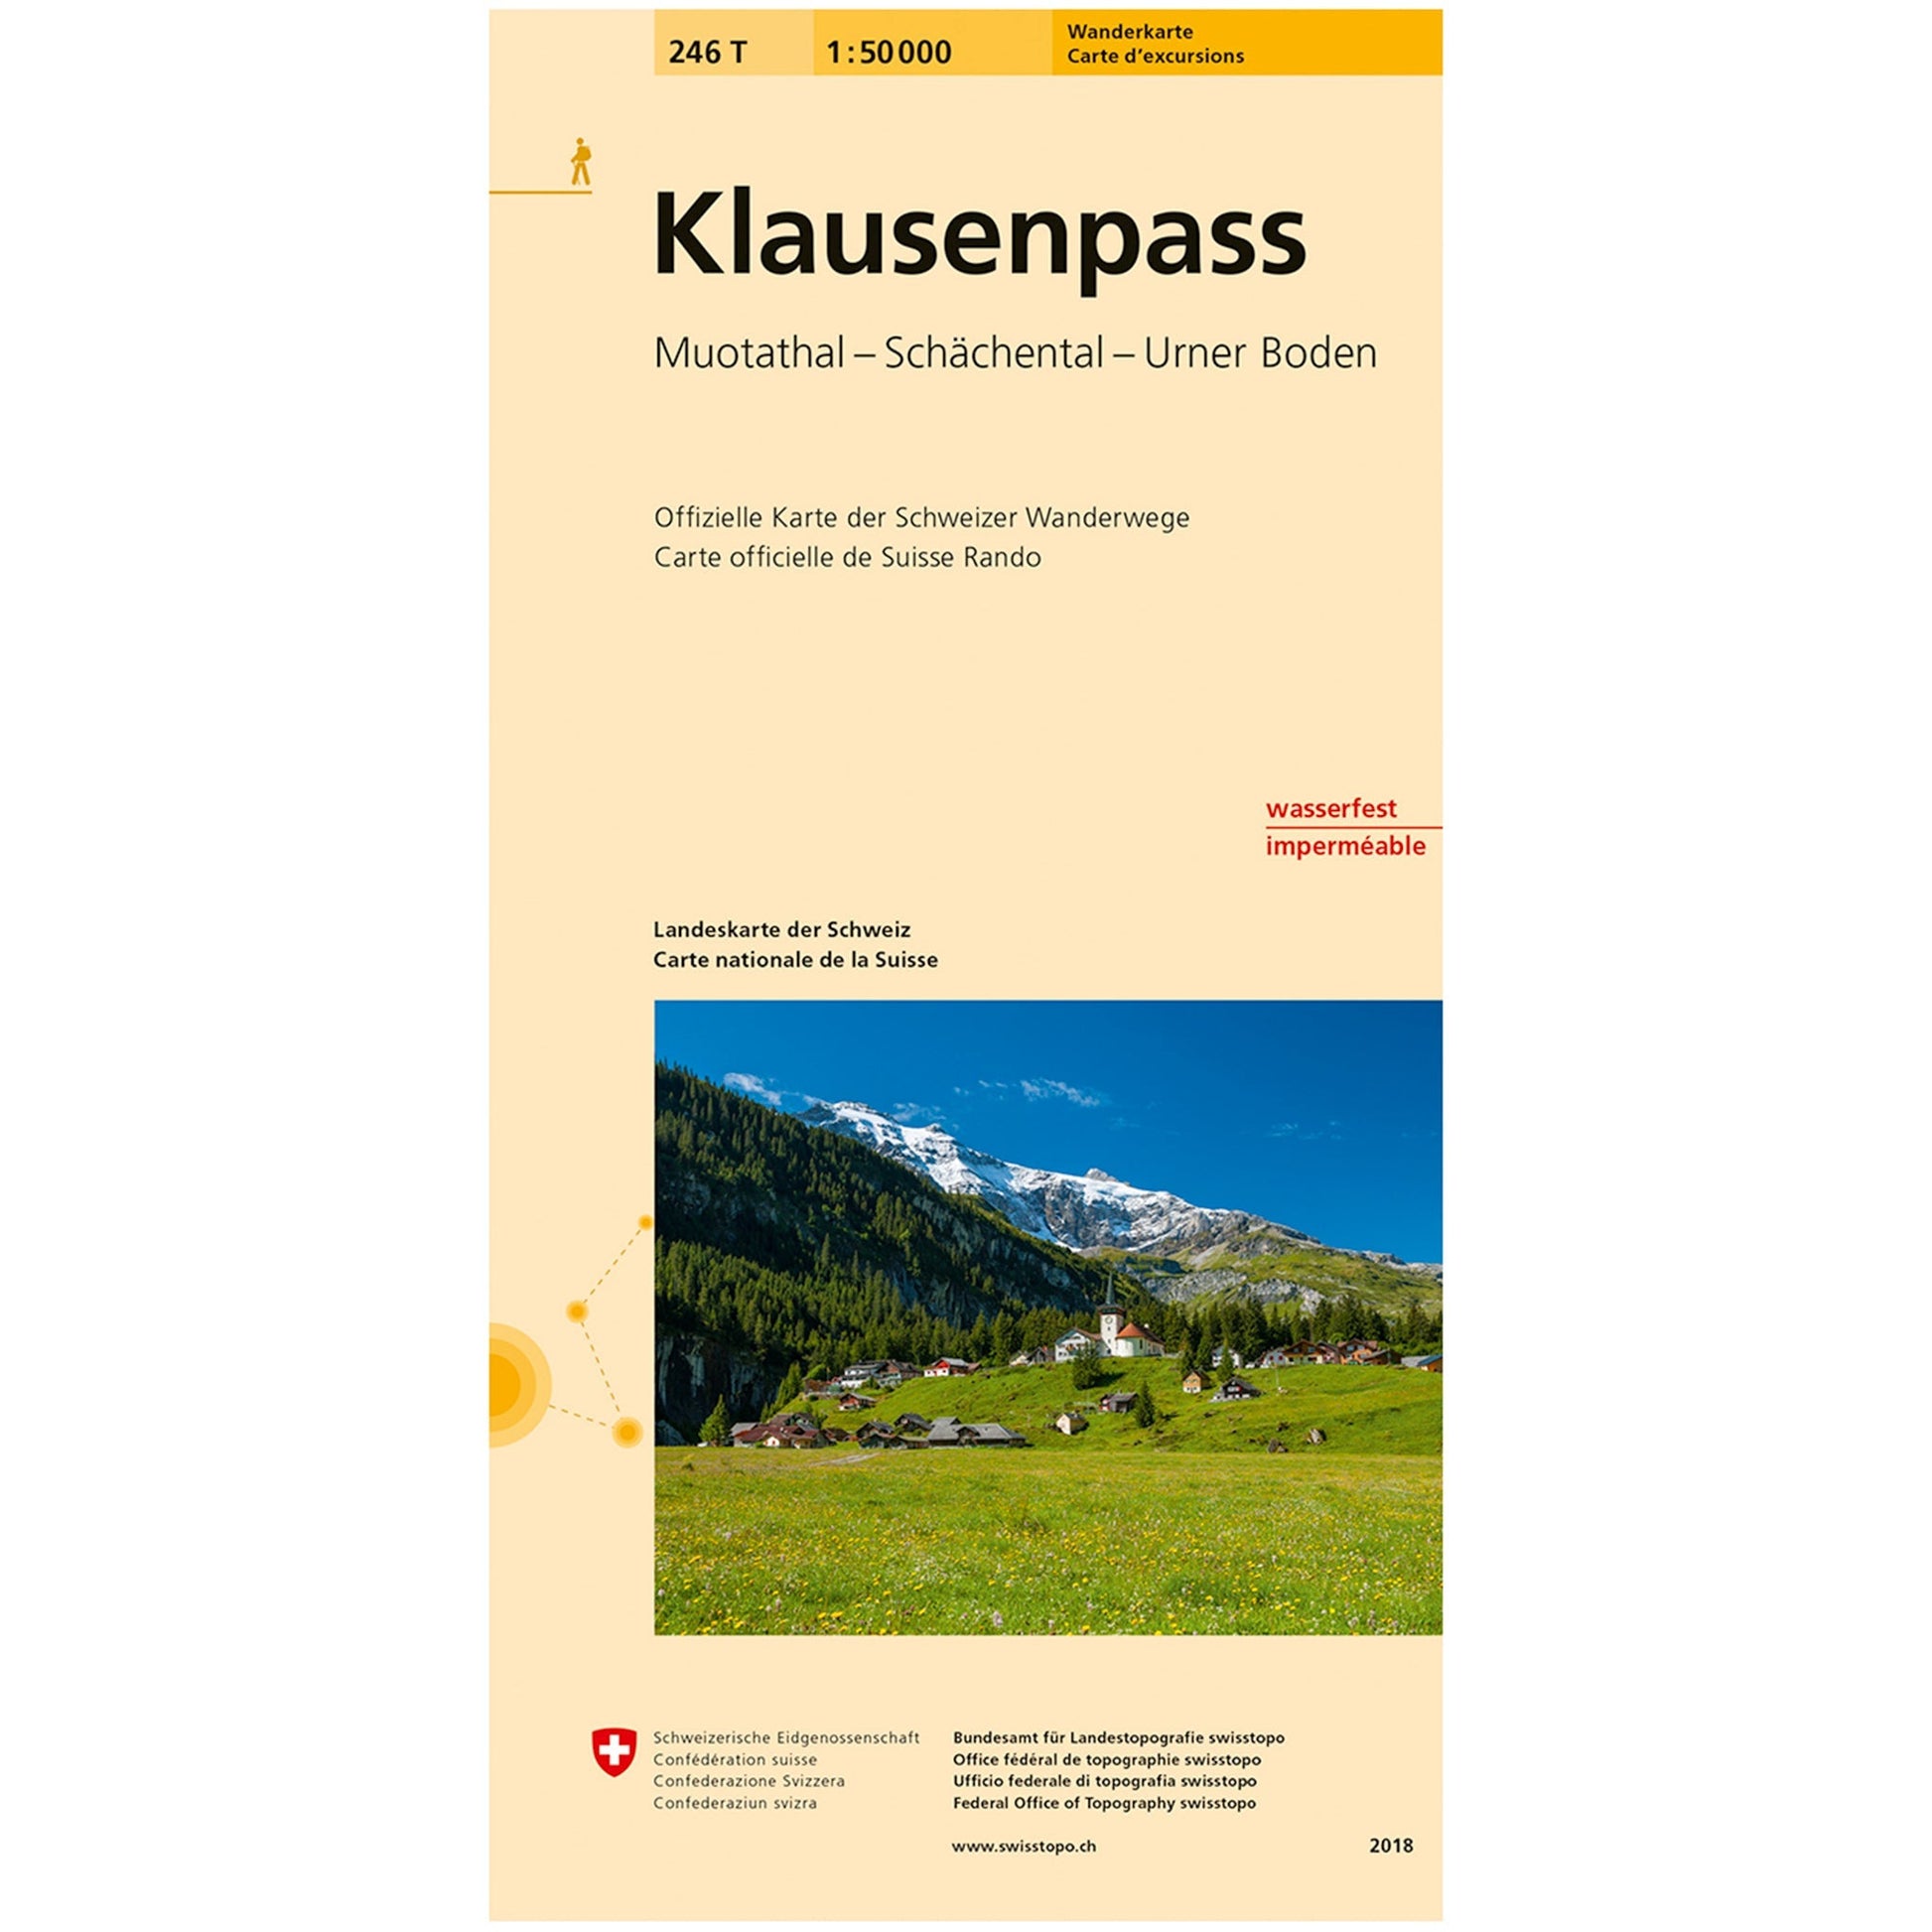 Wanderkarten Swiss Topo 1:50000 Wanderkarten Swisstopo 246T Klausenpass 